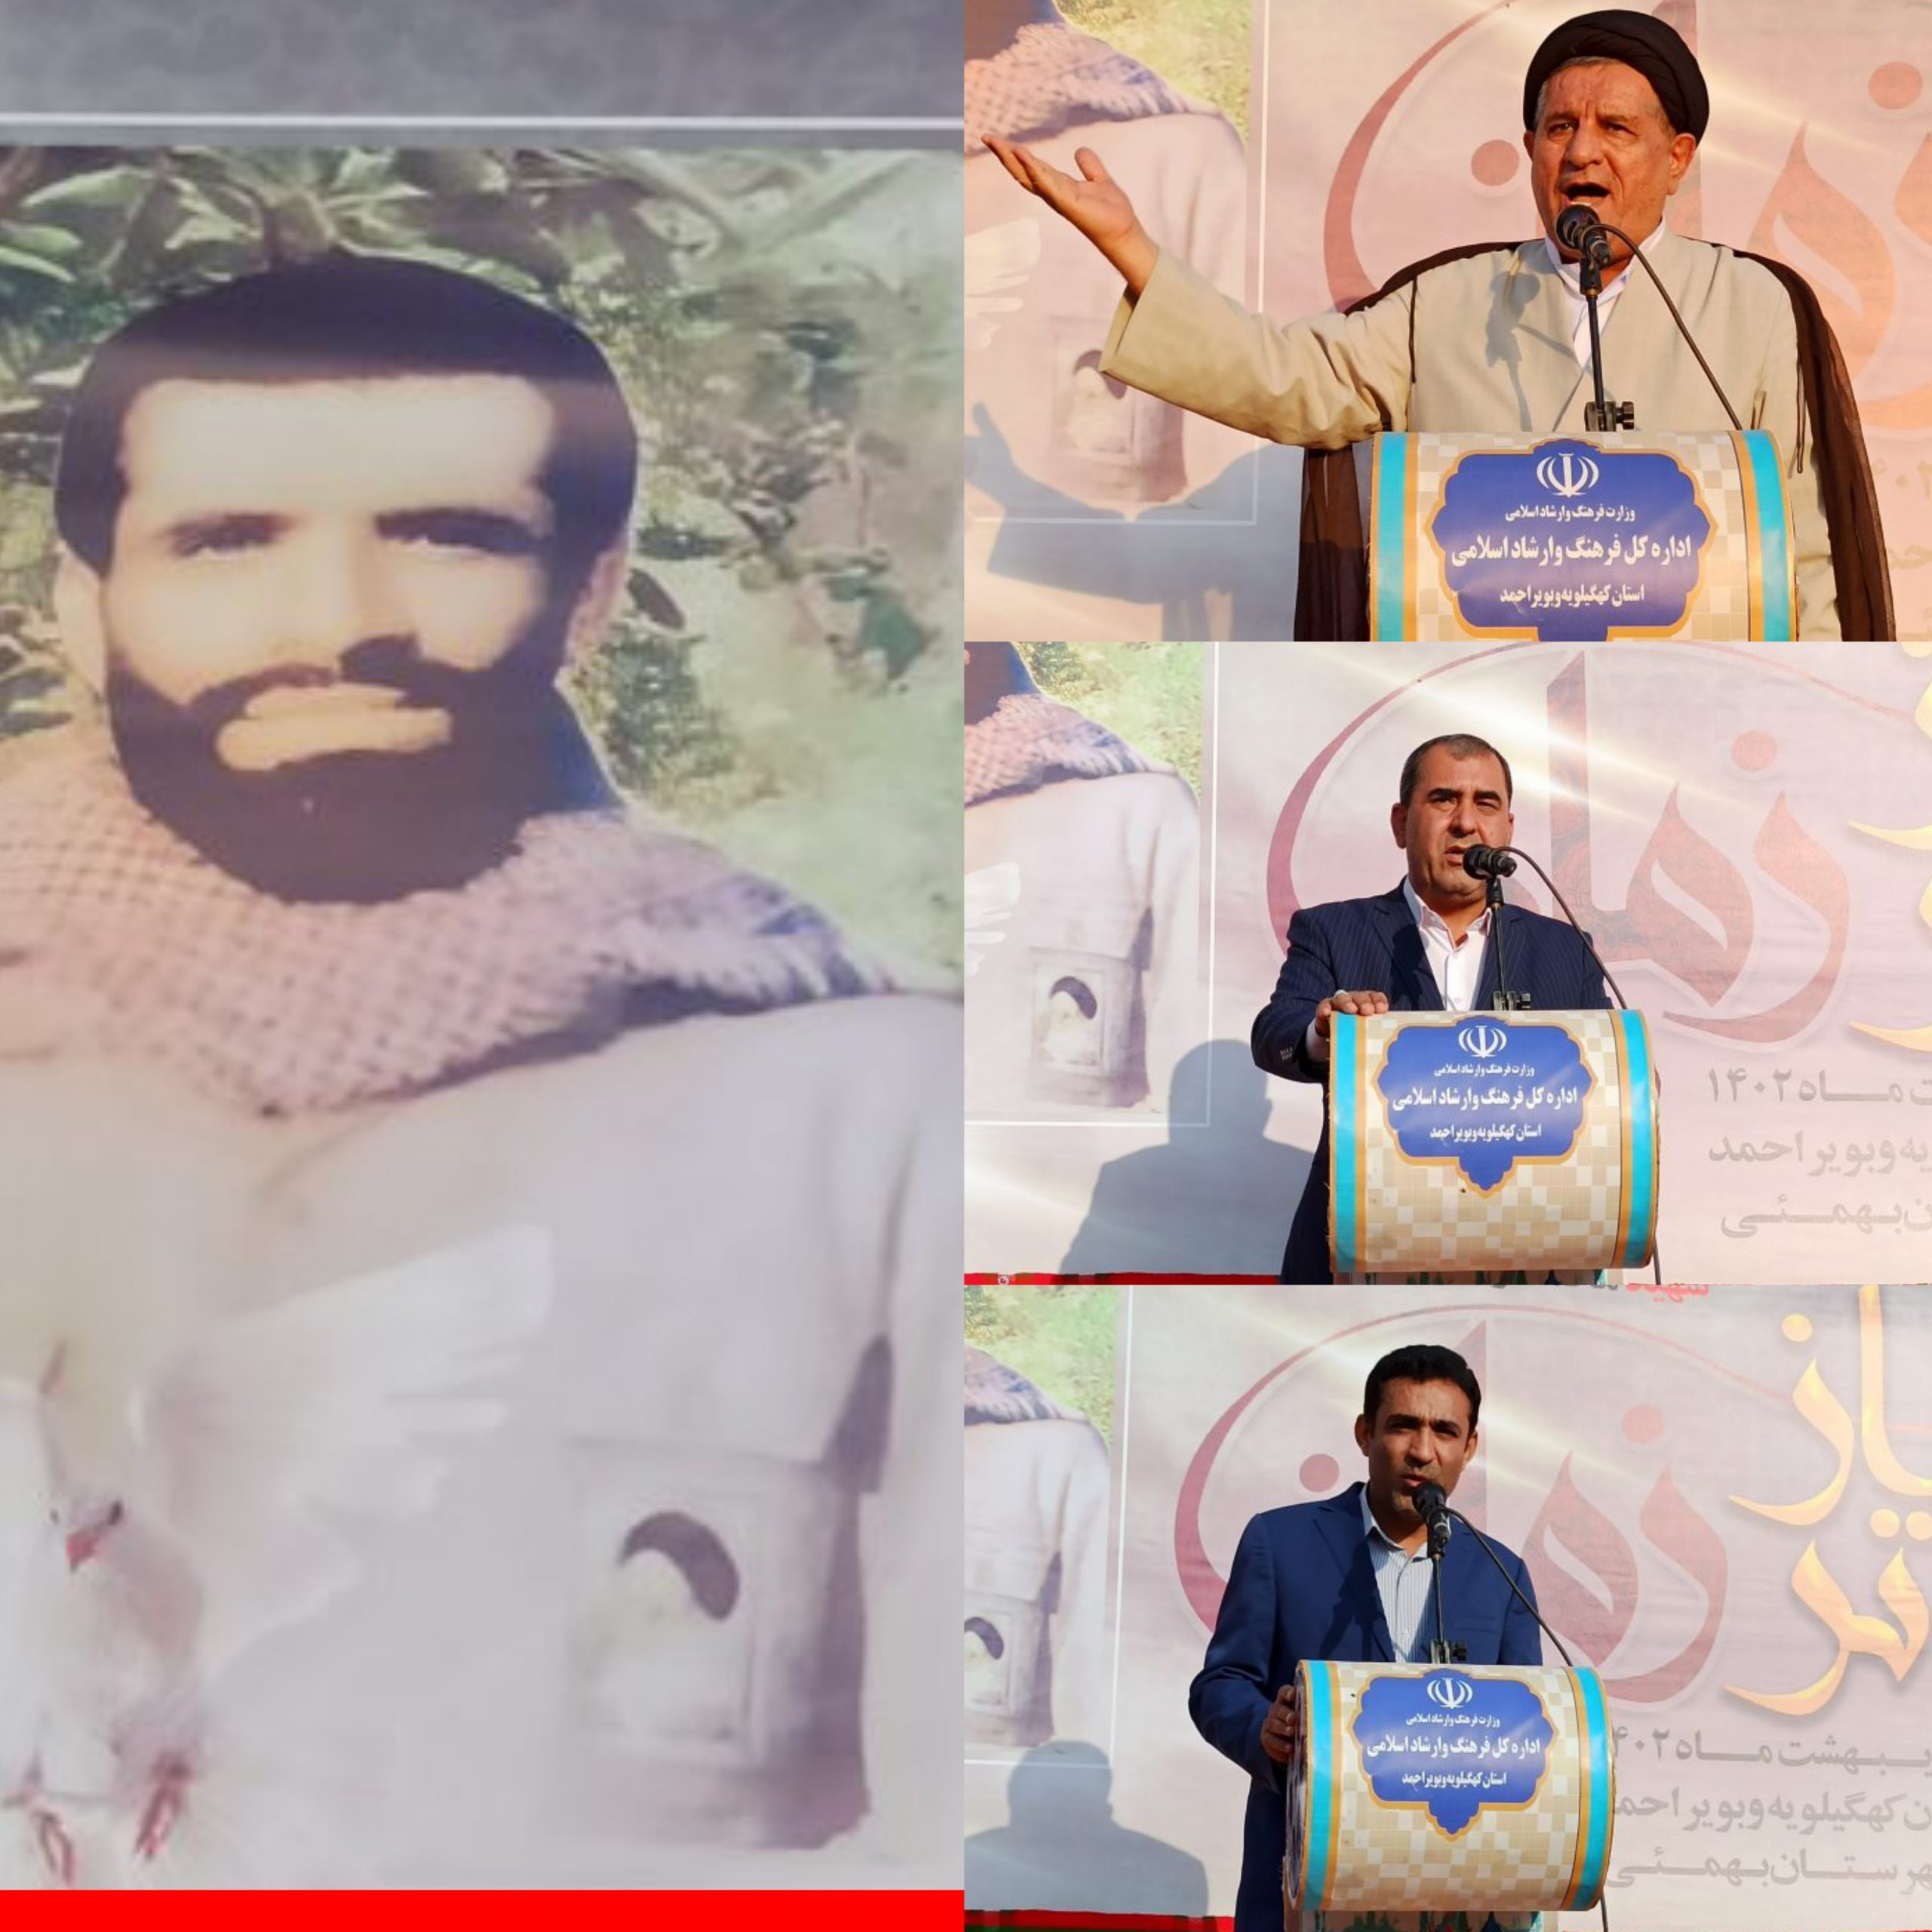 آغاز ساخت فیلم مستند رشادت های شهید محمدرضا جهان نژادیان از شهدای فرهنگی و هنرمند شهرستان بهمئی+ تصاویر